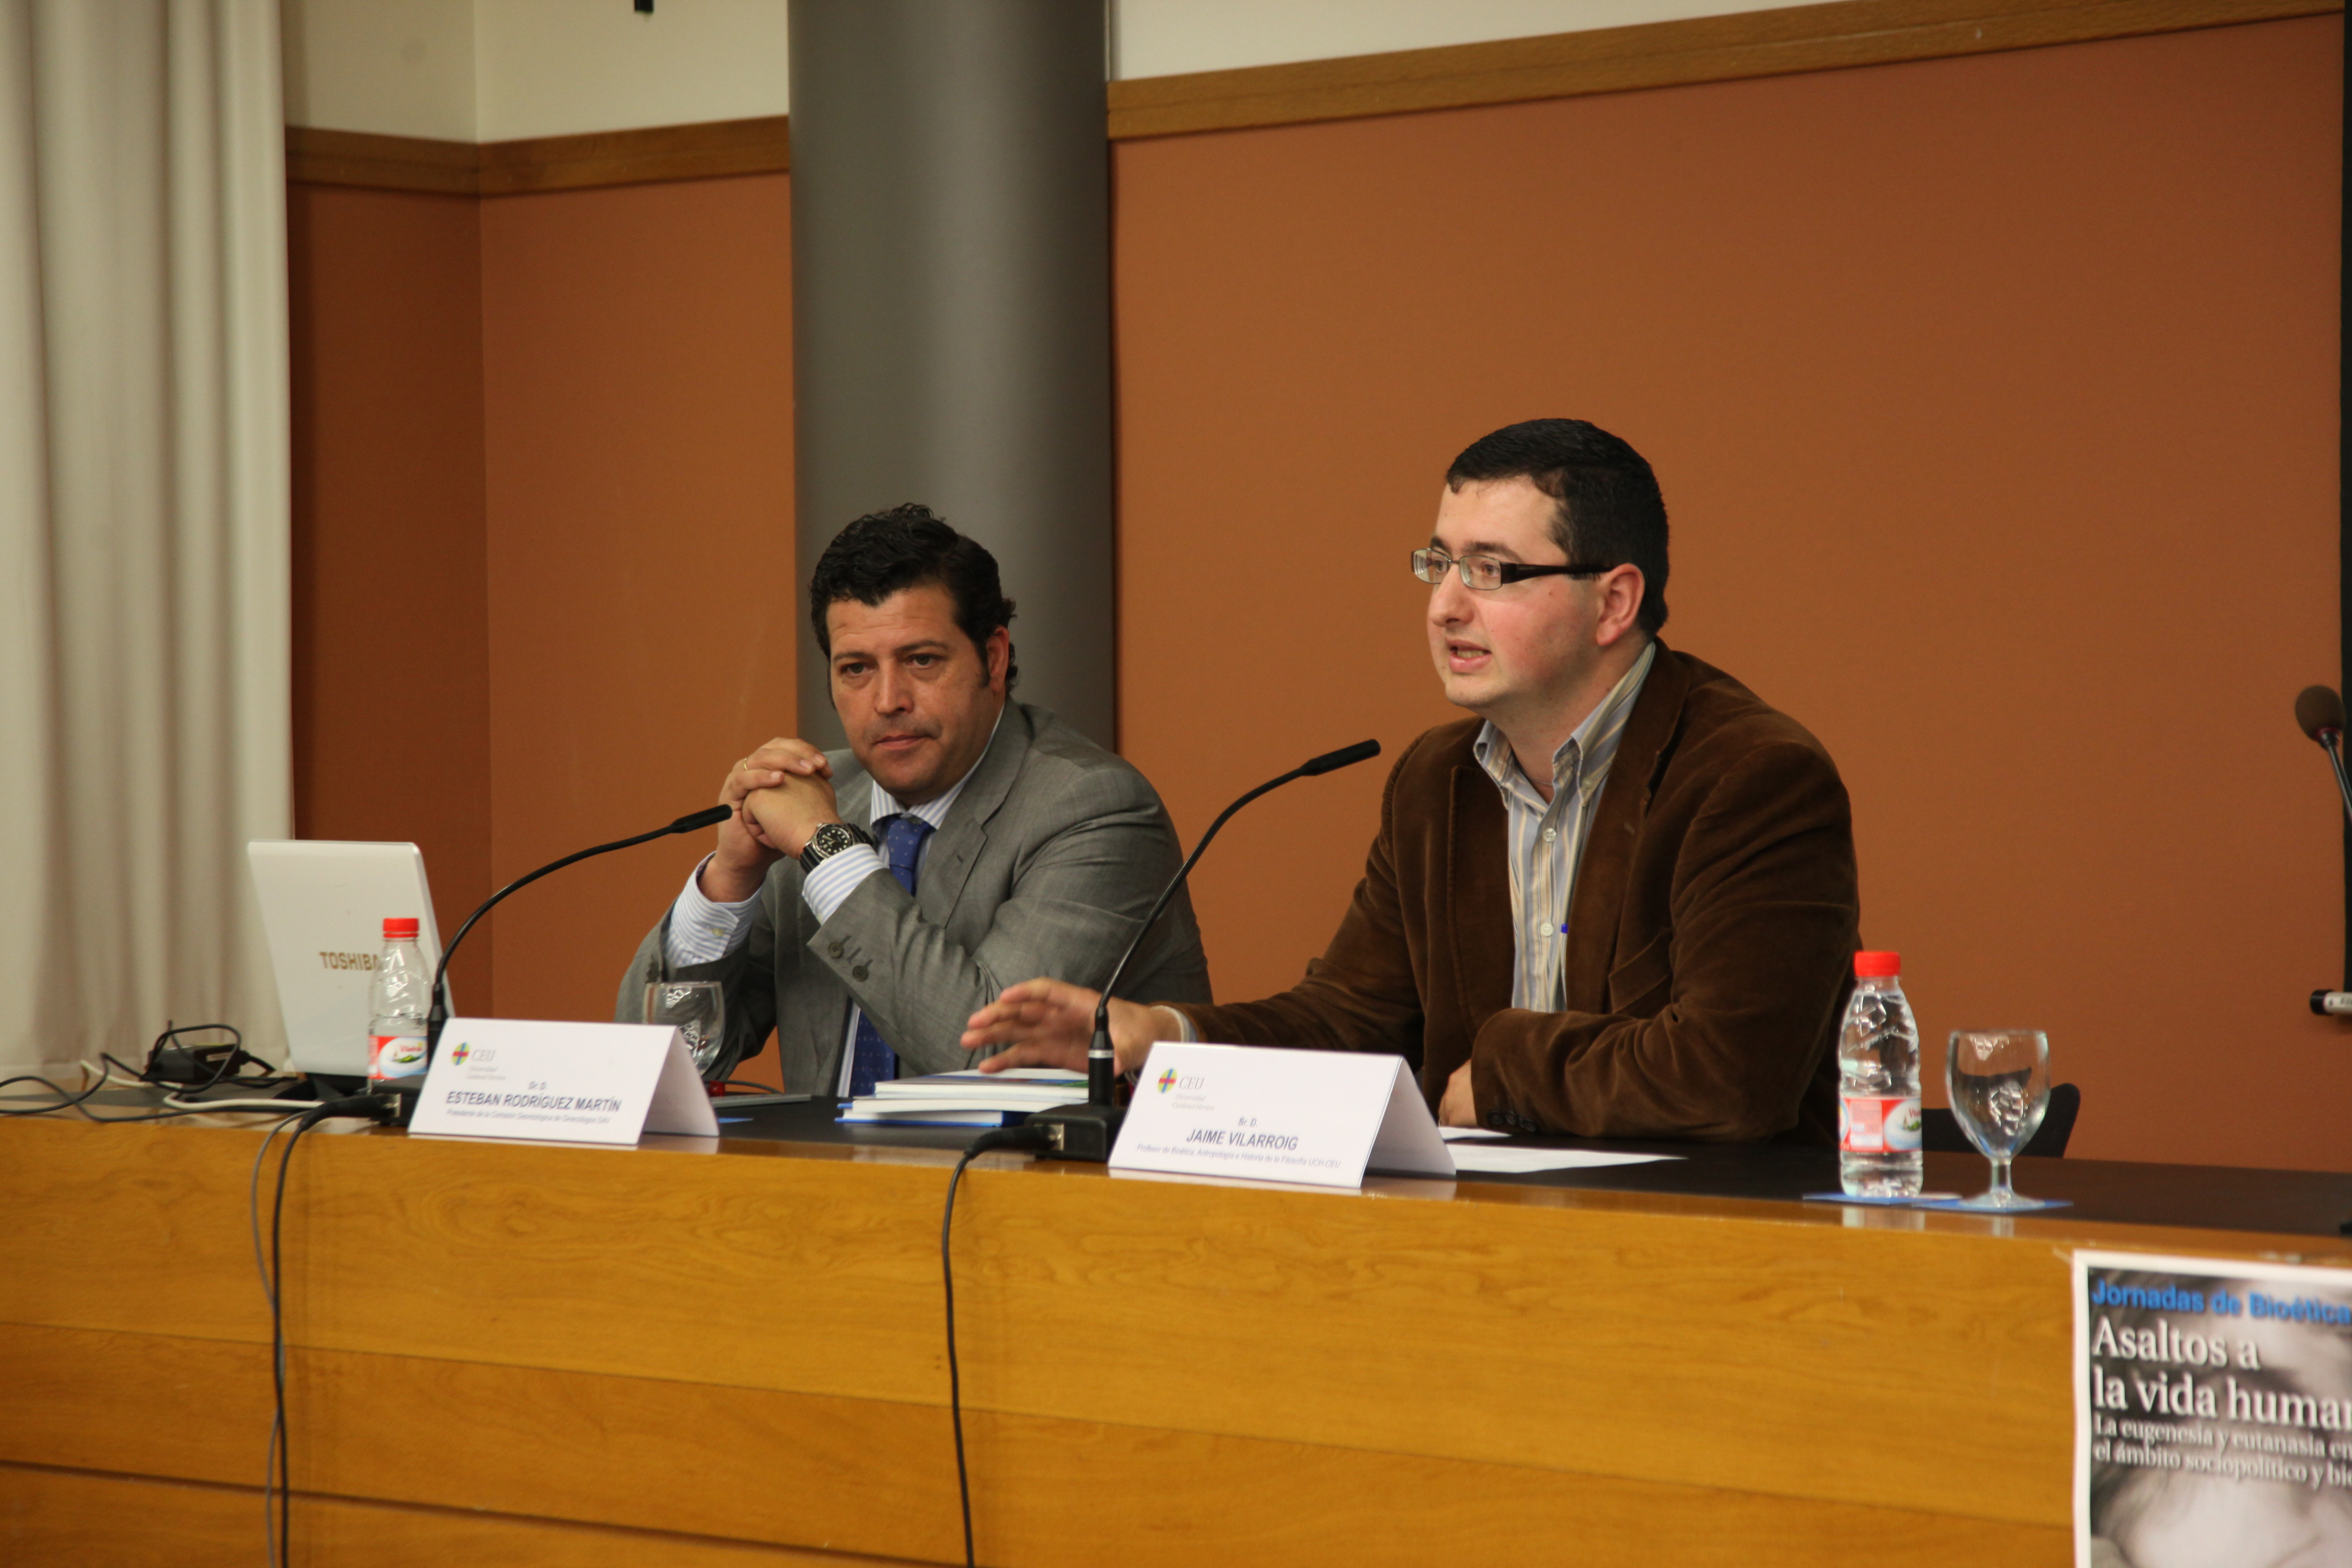 El doctor Esteban Rodríguez y el profesor de la CEU-UCH Jaime Vilarroig durante la Jornada de Bioética.